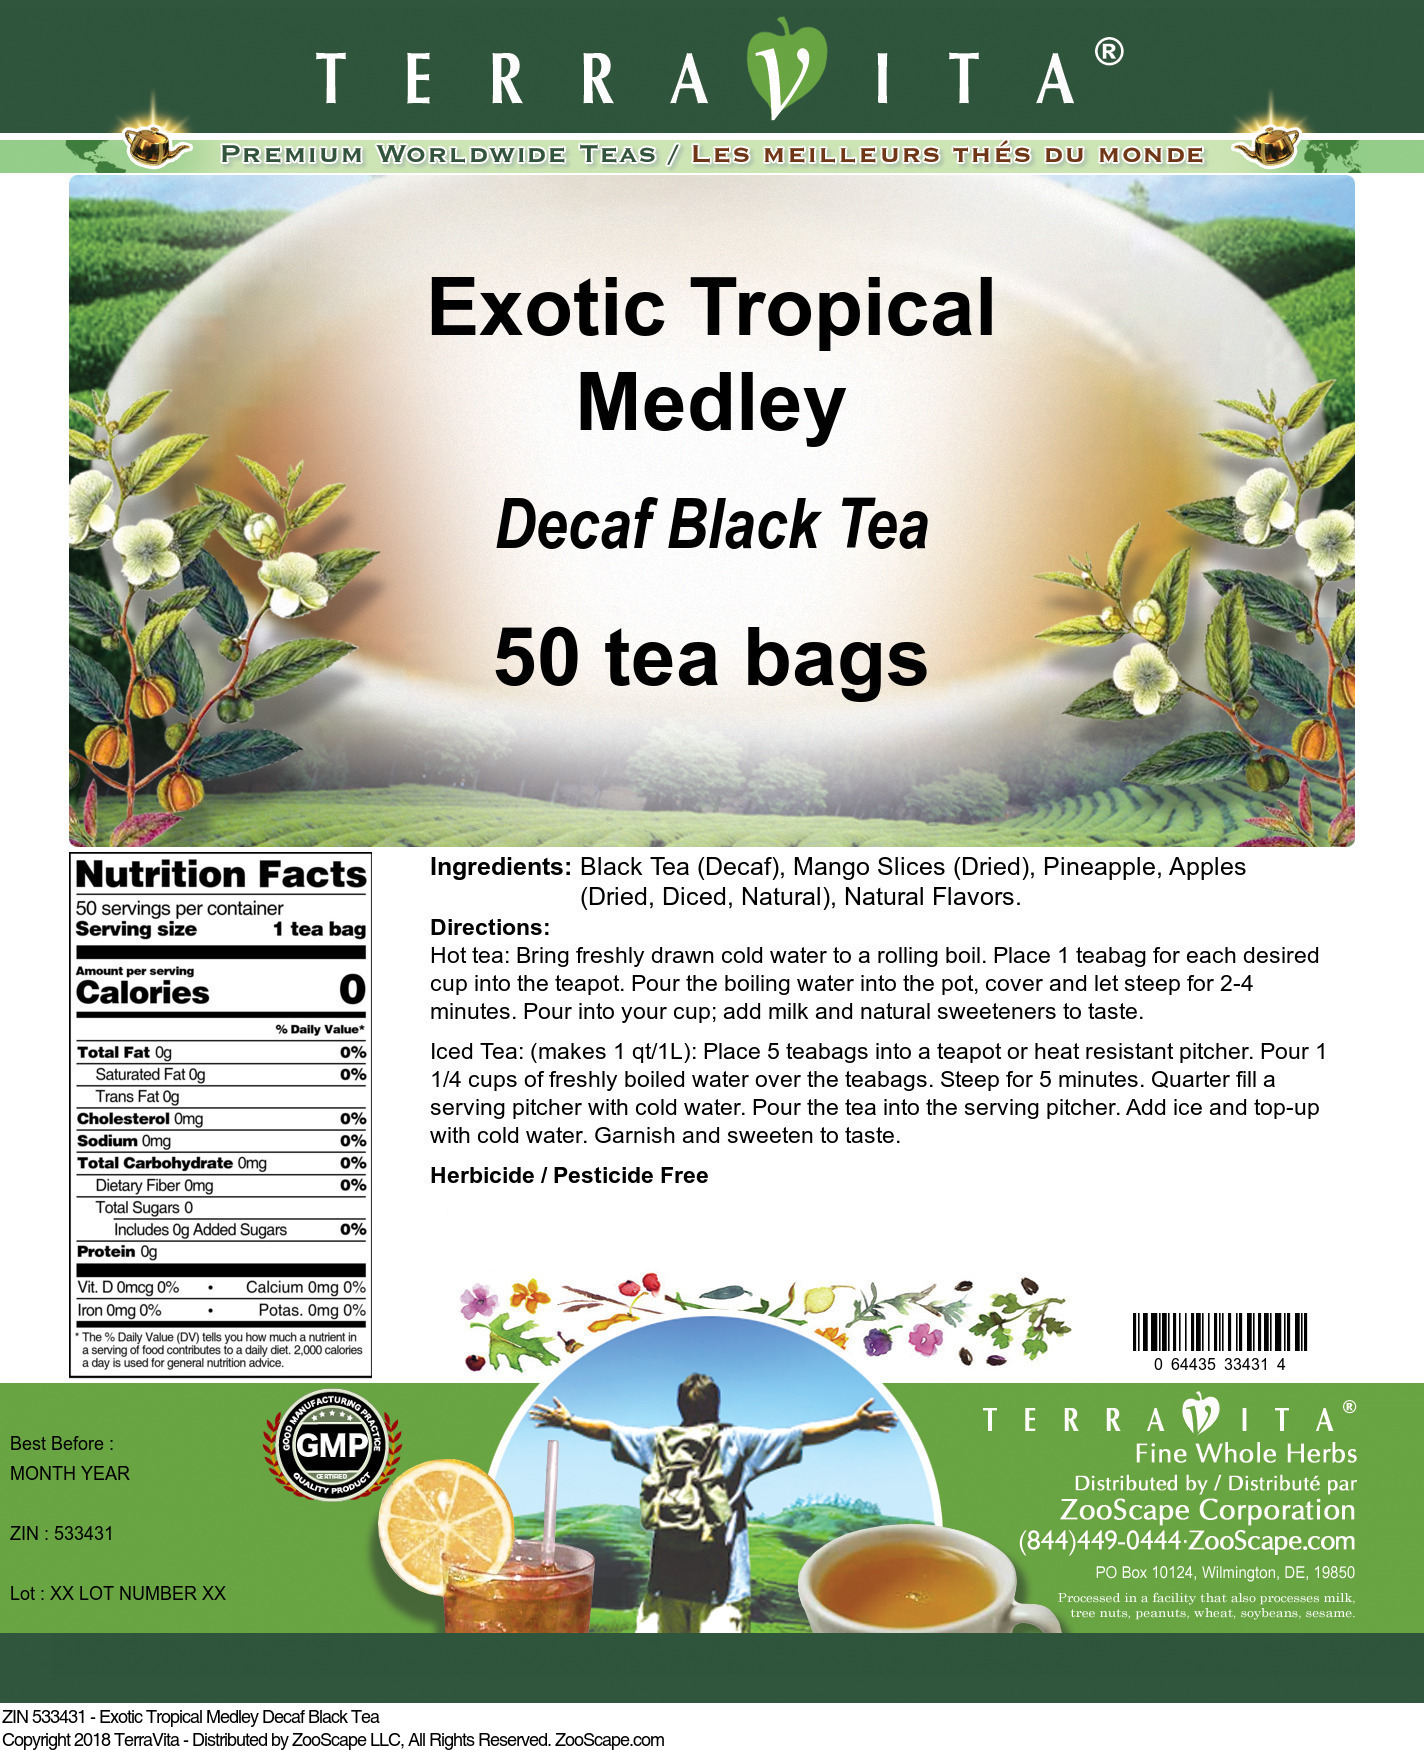 Exotic Tropical Medley Decaf Black Tea - Label